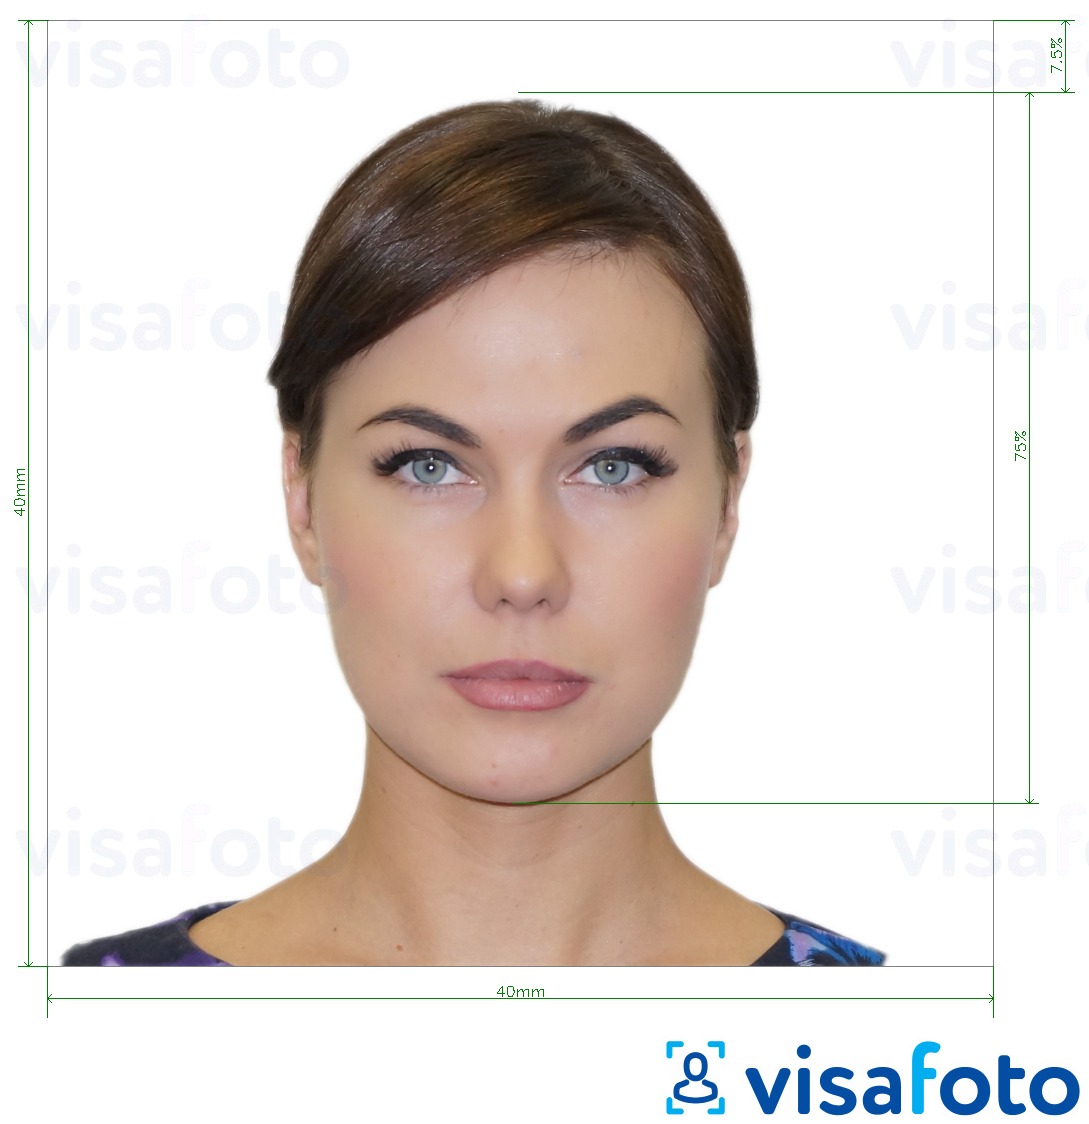 Приклад фотографії для Італія Паспорт 40x40 мм (консульство LA) 4x4 см з точними специфікаціями розміру